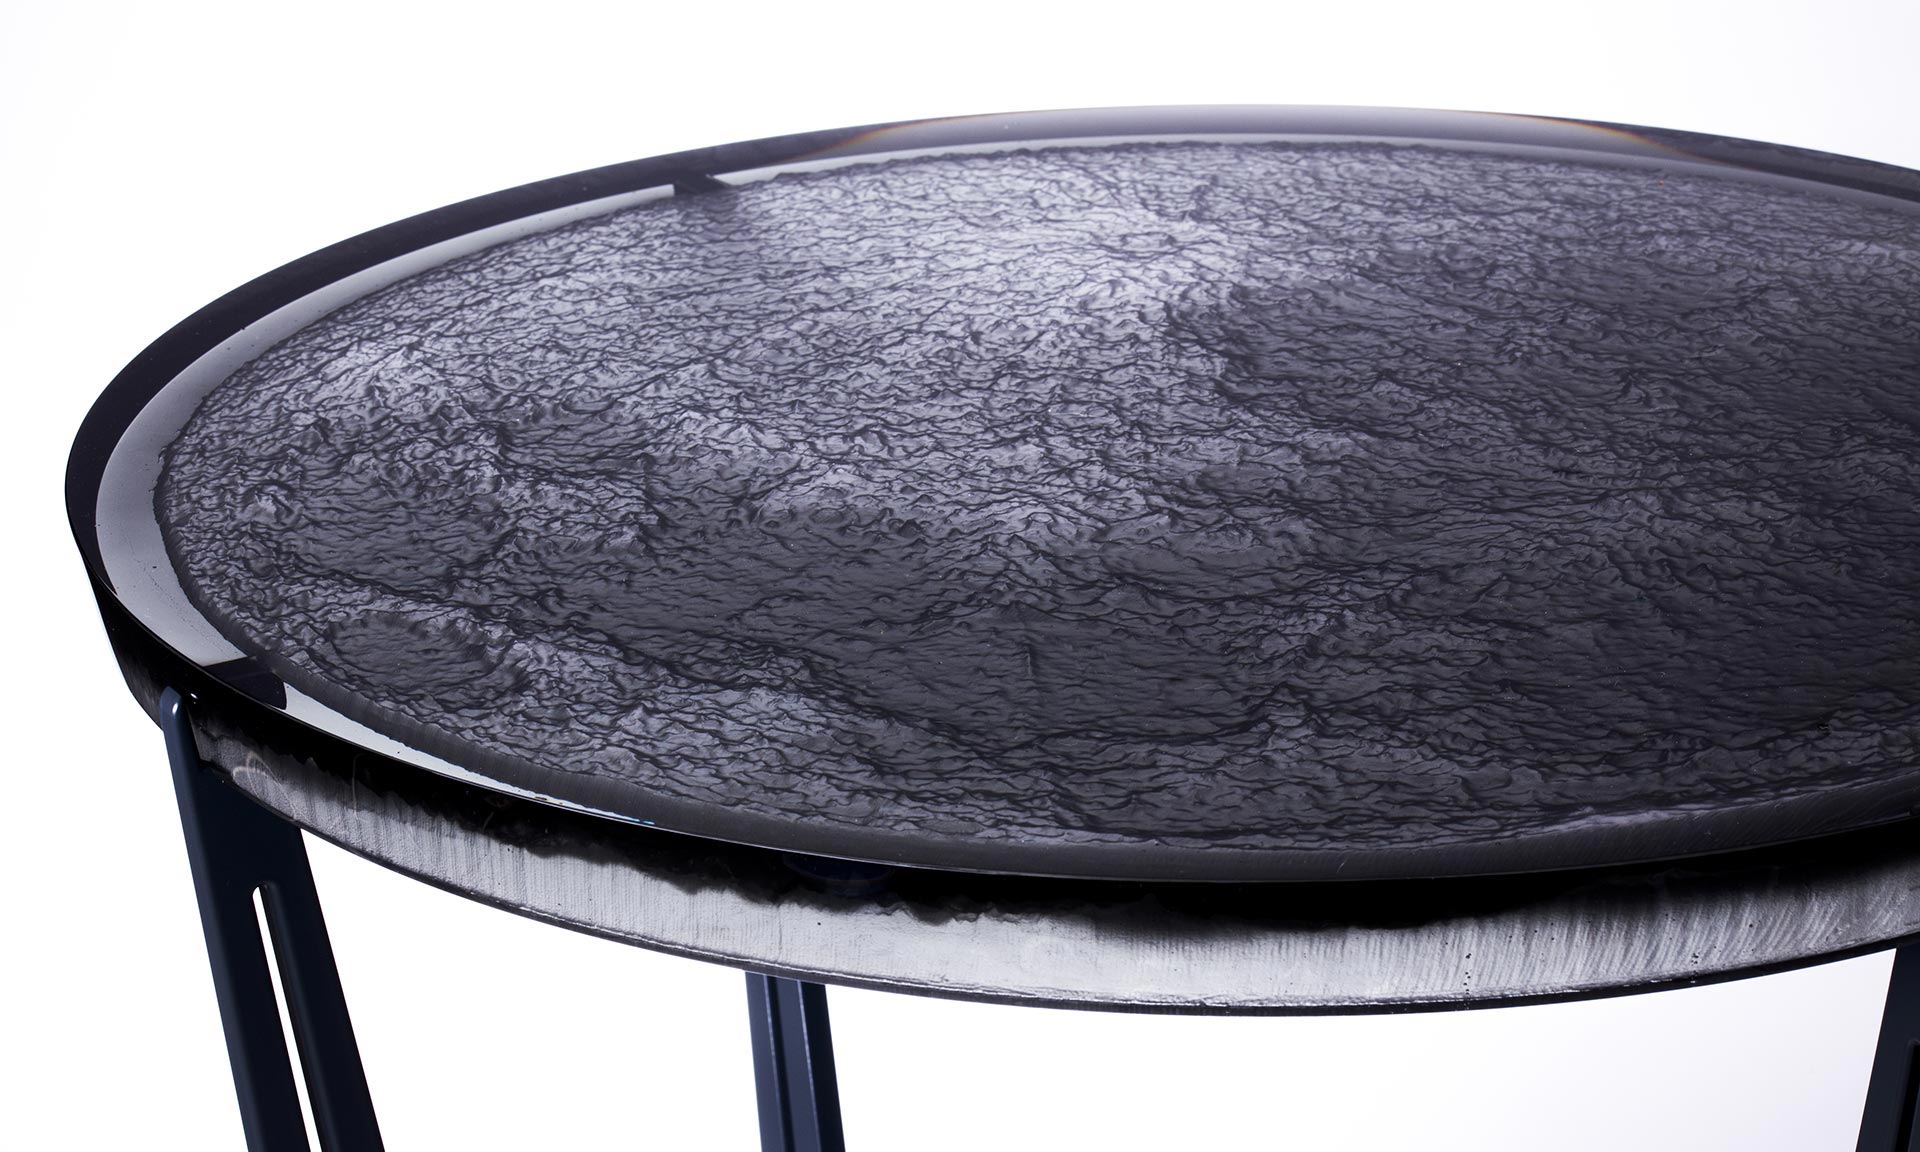 Trojice českých designérů vytvořila skleněný stůl Moon Table s otiskem Měsíce